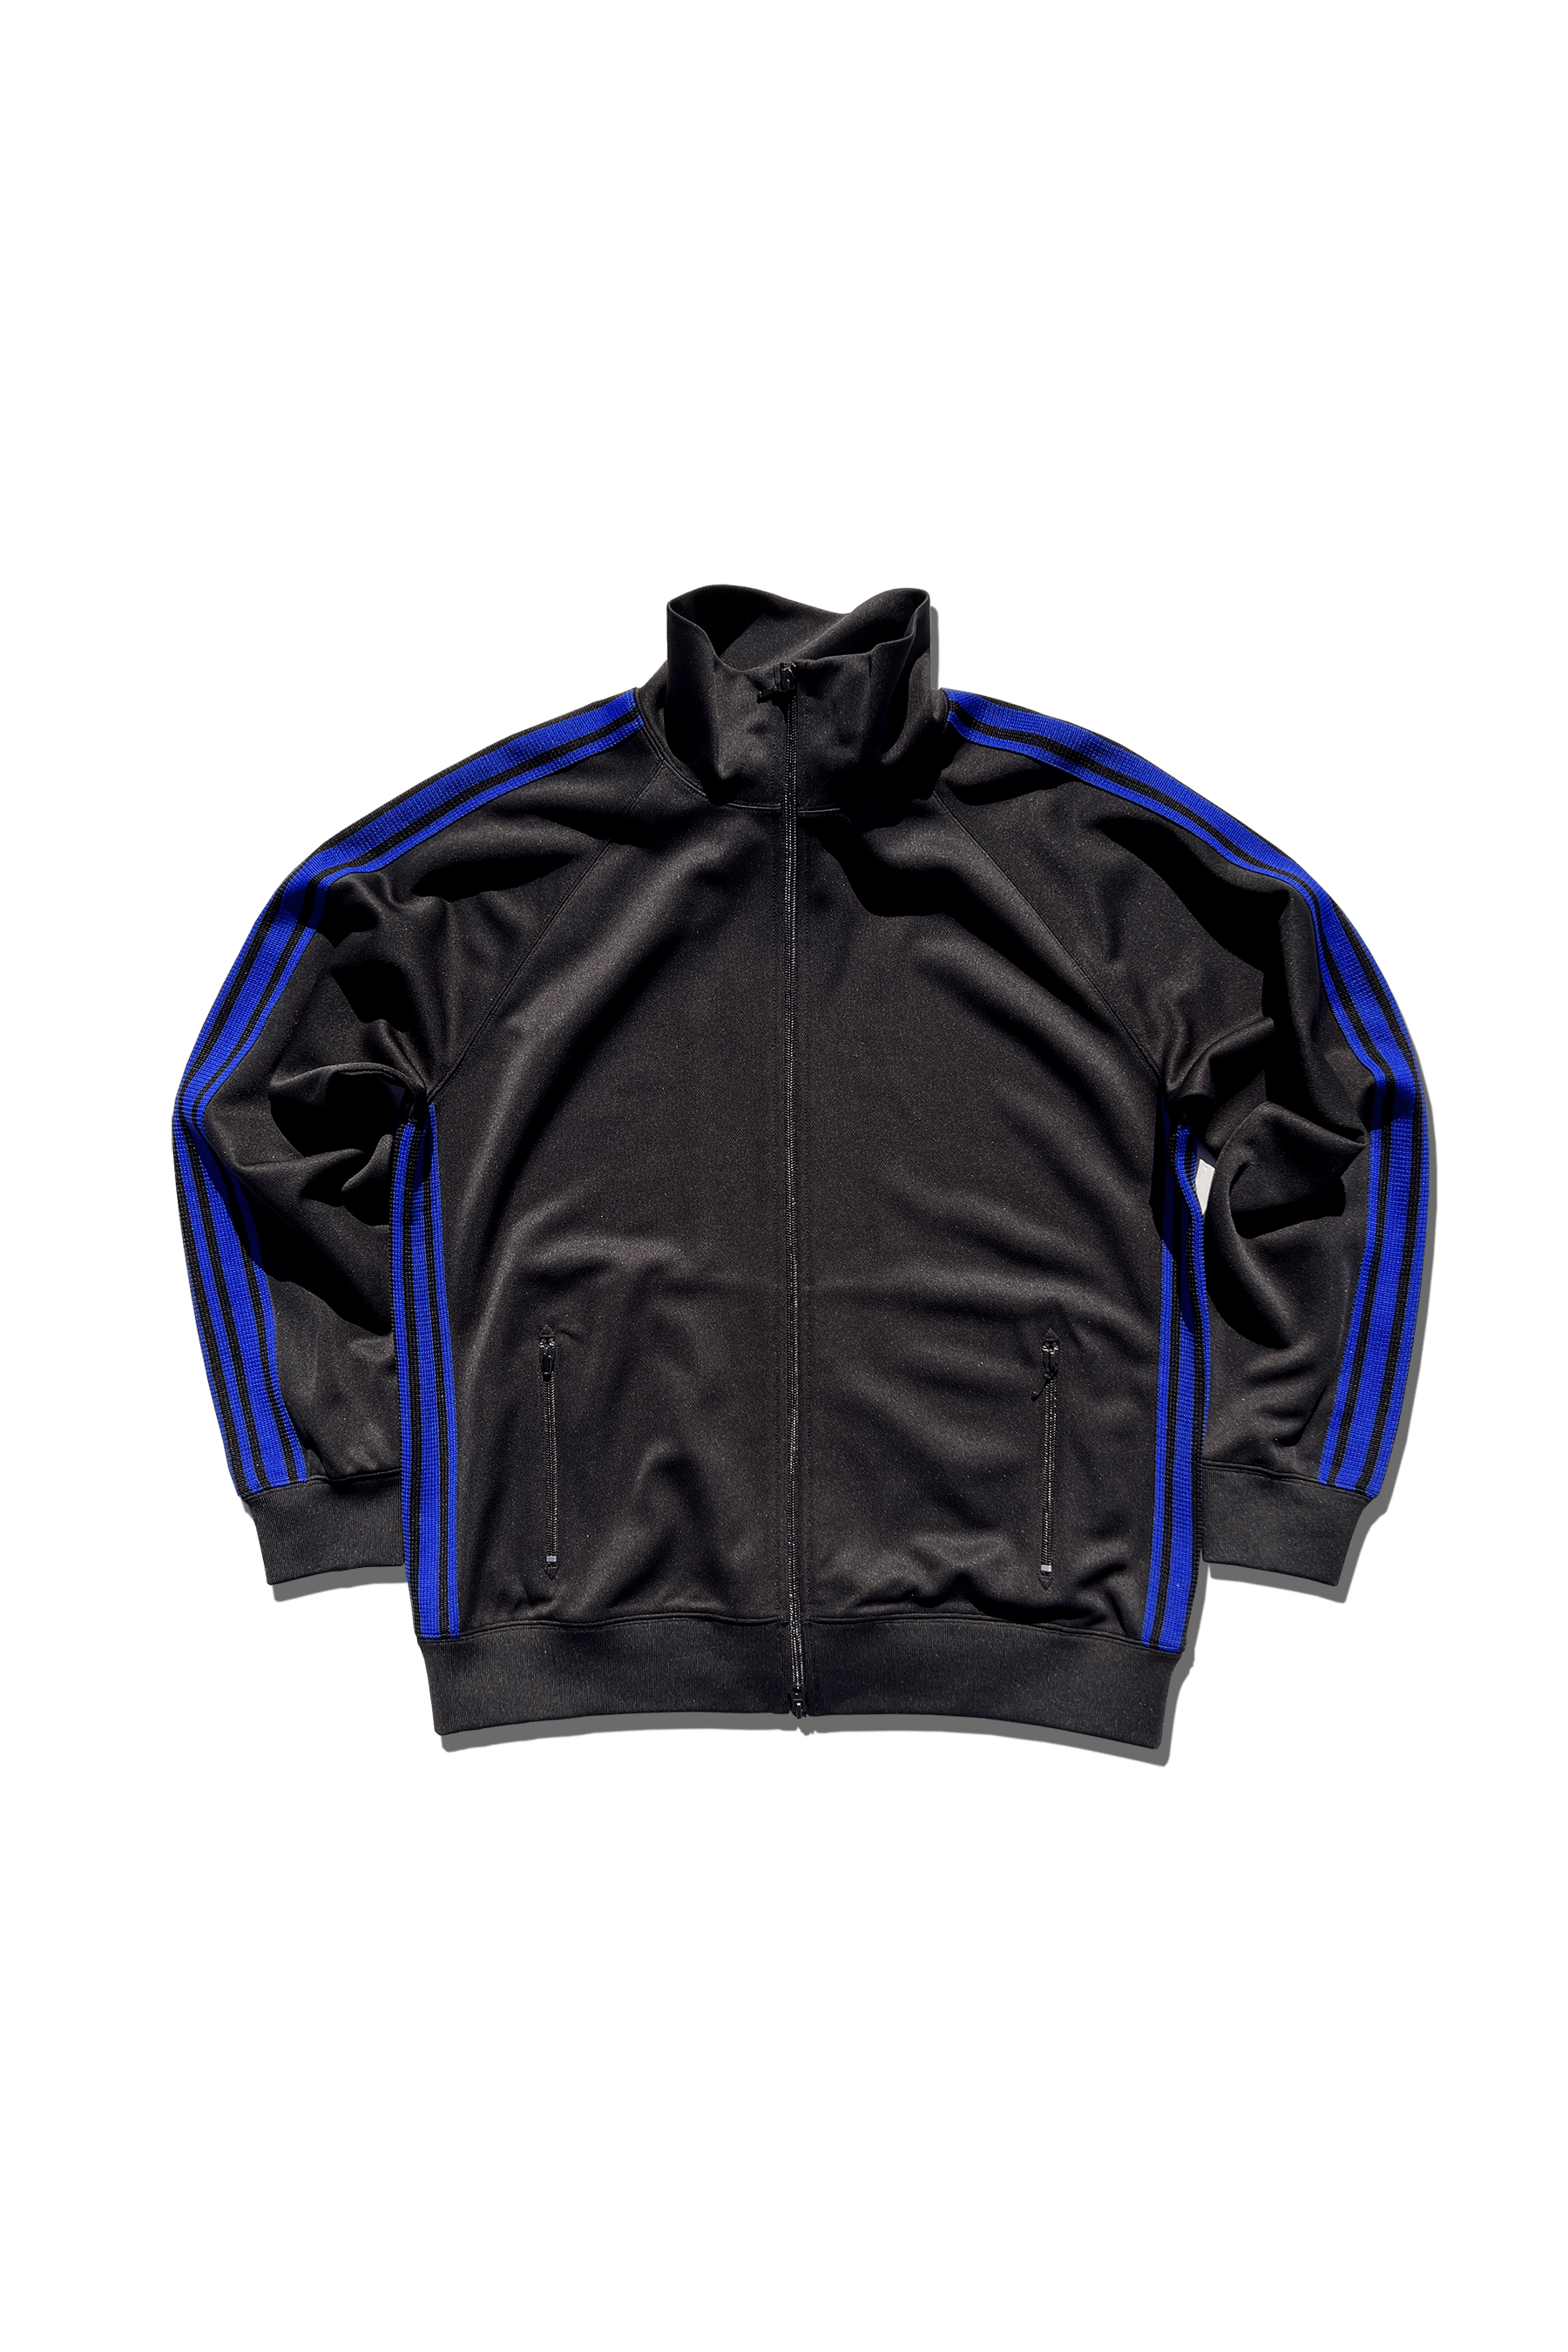 Trackstar Jacket – MADE